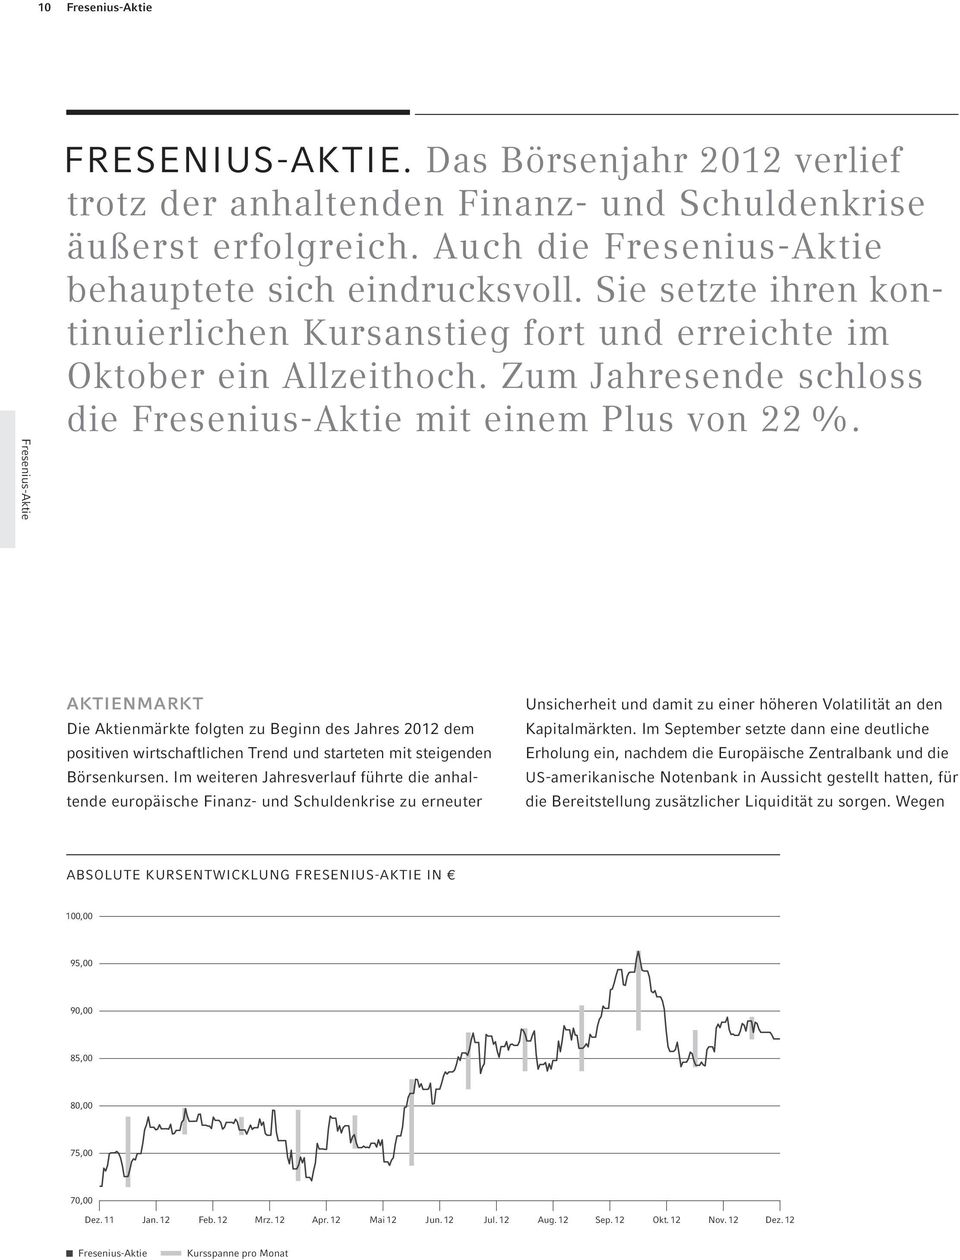 Zum Jahresende schloss die Fresenius-Aktie mit einem Plus von 22 %.